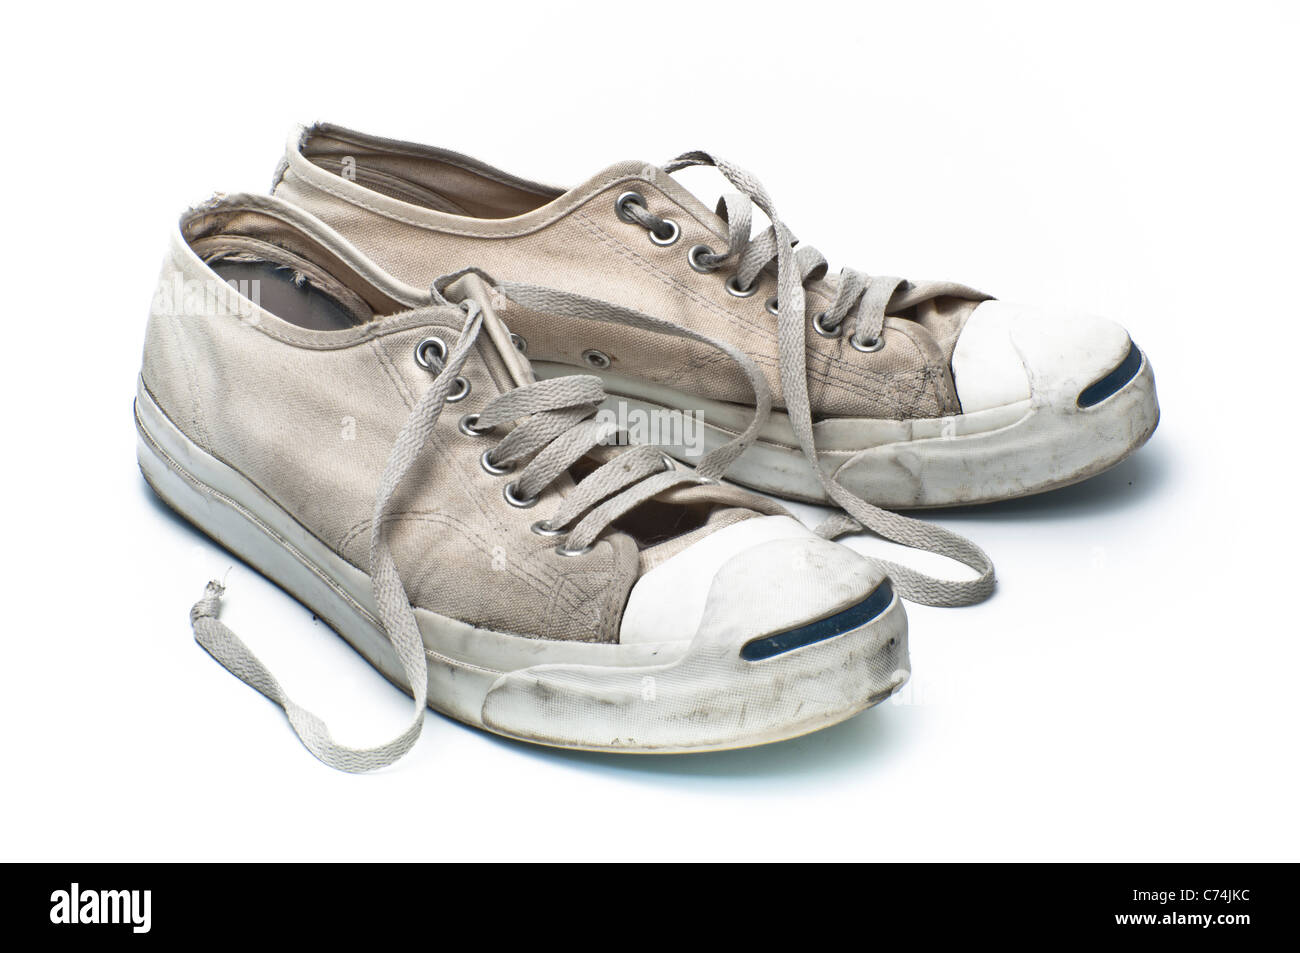 Converse Jack Purcell Tennis Schuhe auf einem weißen Hintergrund PHILLIP ROBERTS Stockfoto